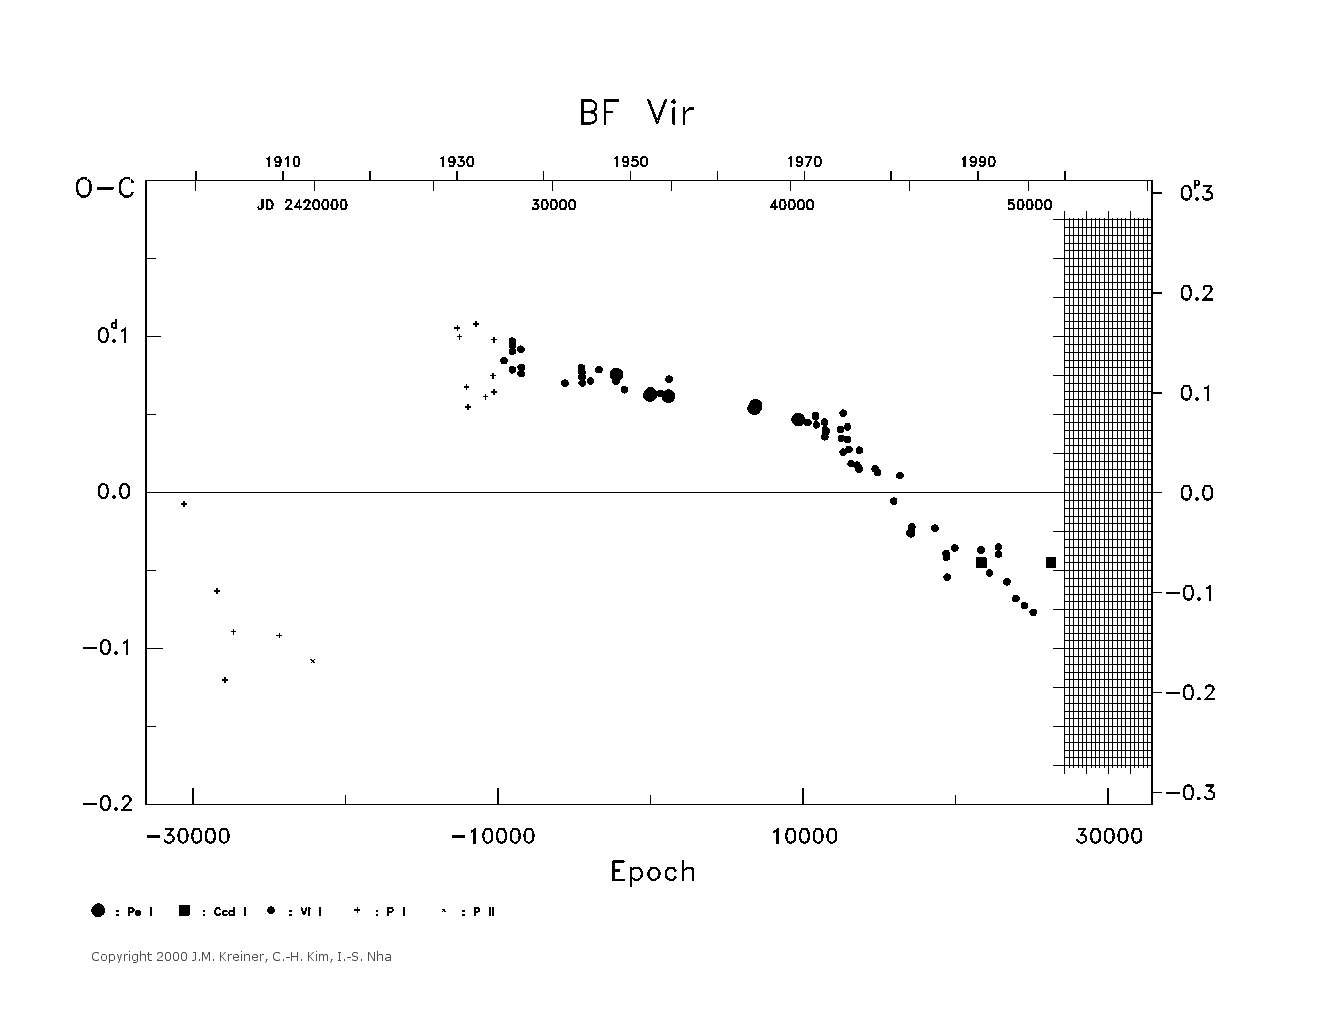 [IMAGE: large BF VIR O-C diagram]